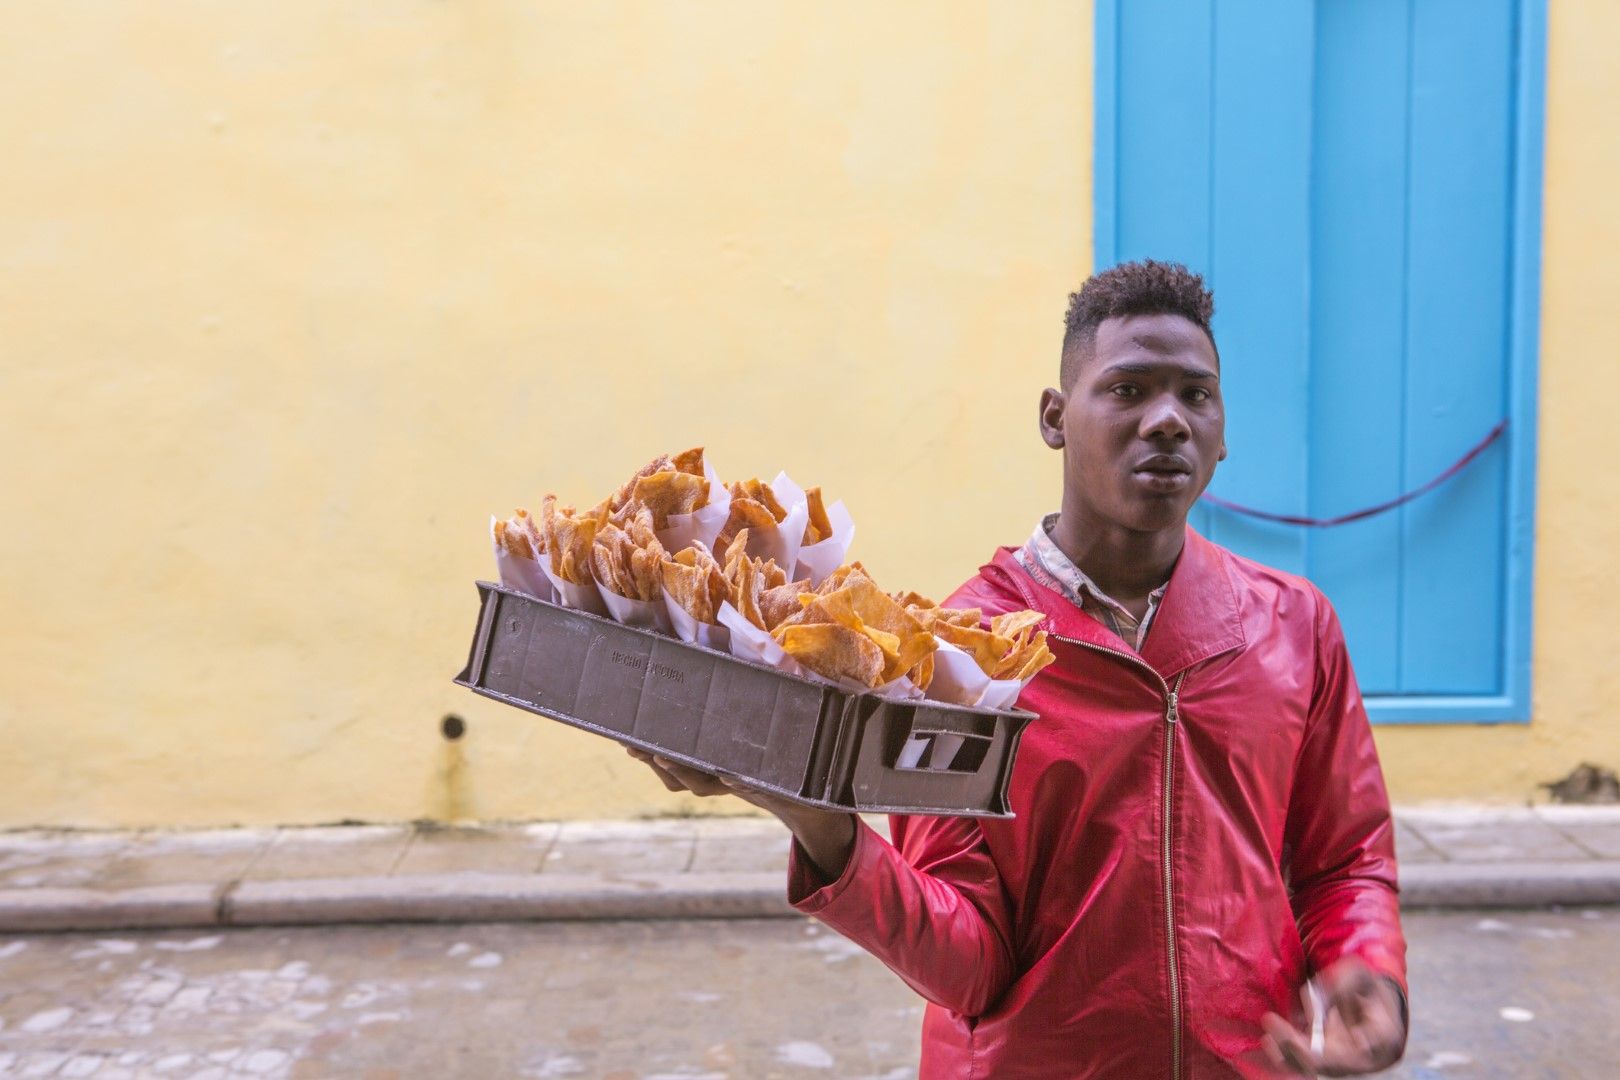 Уличната храна също си заслужава да ѝ дадете шанс. Този мъж продава чивирикос - хрупкави пържени парчета тесто, поръсени с пудра захар.